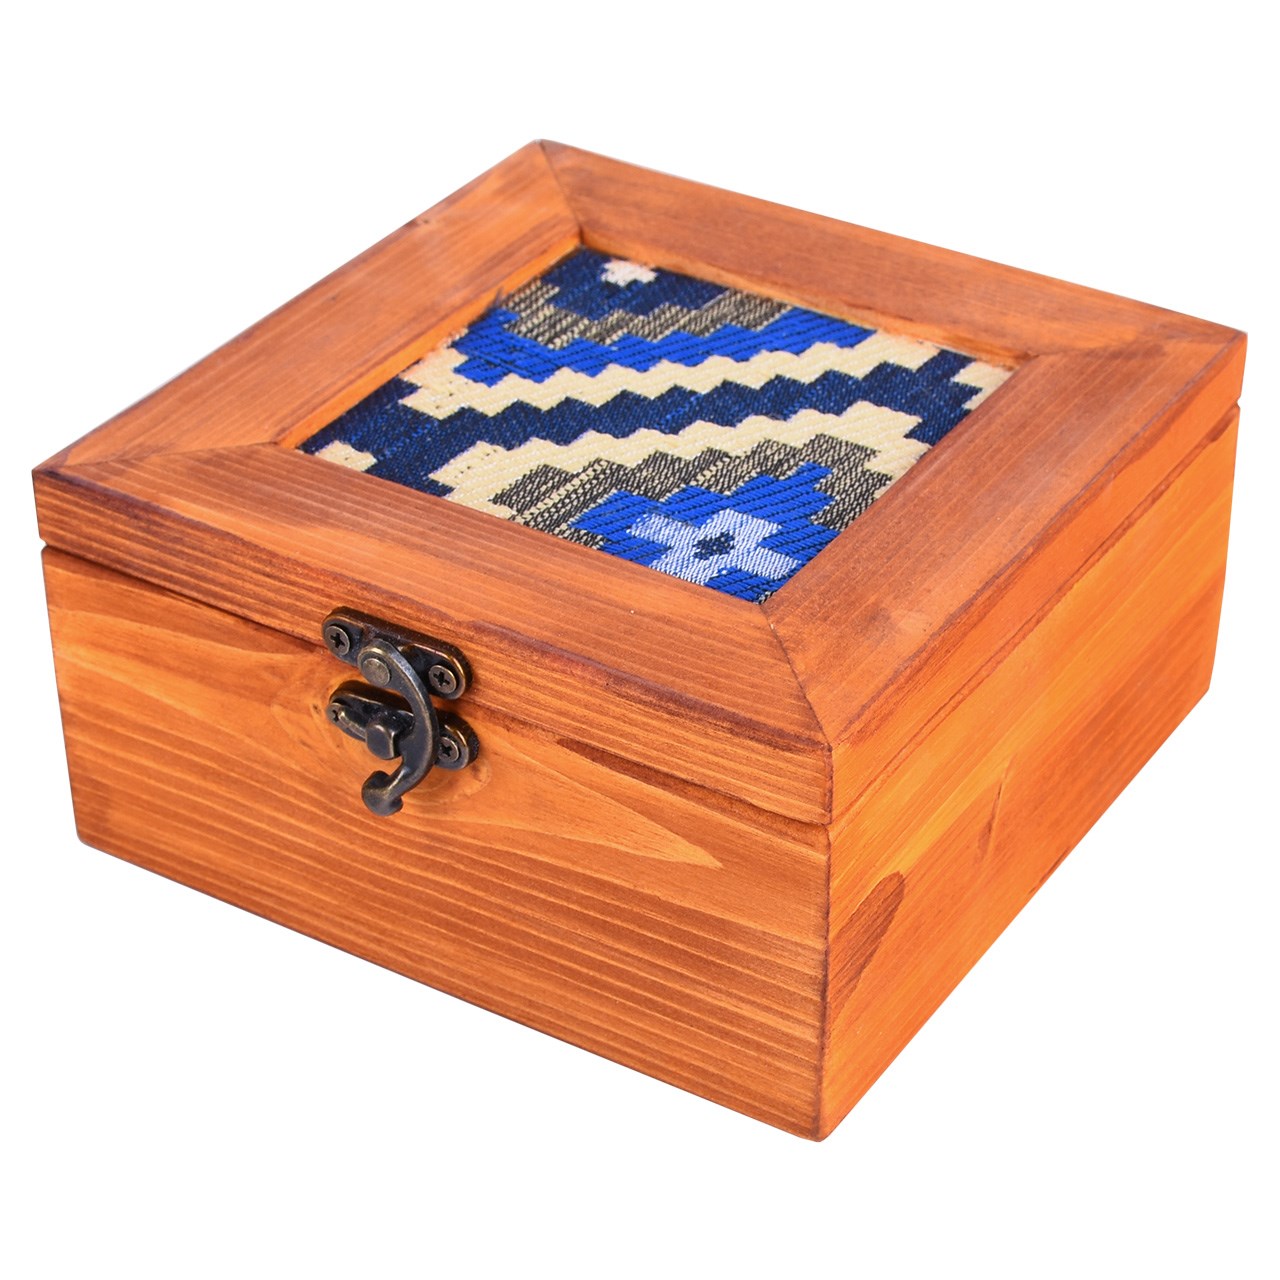 جعبه چوبی گروه هنری دست استودیو طرح جاجیم مربع مدل 00-09 سایز متوسط